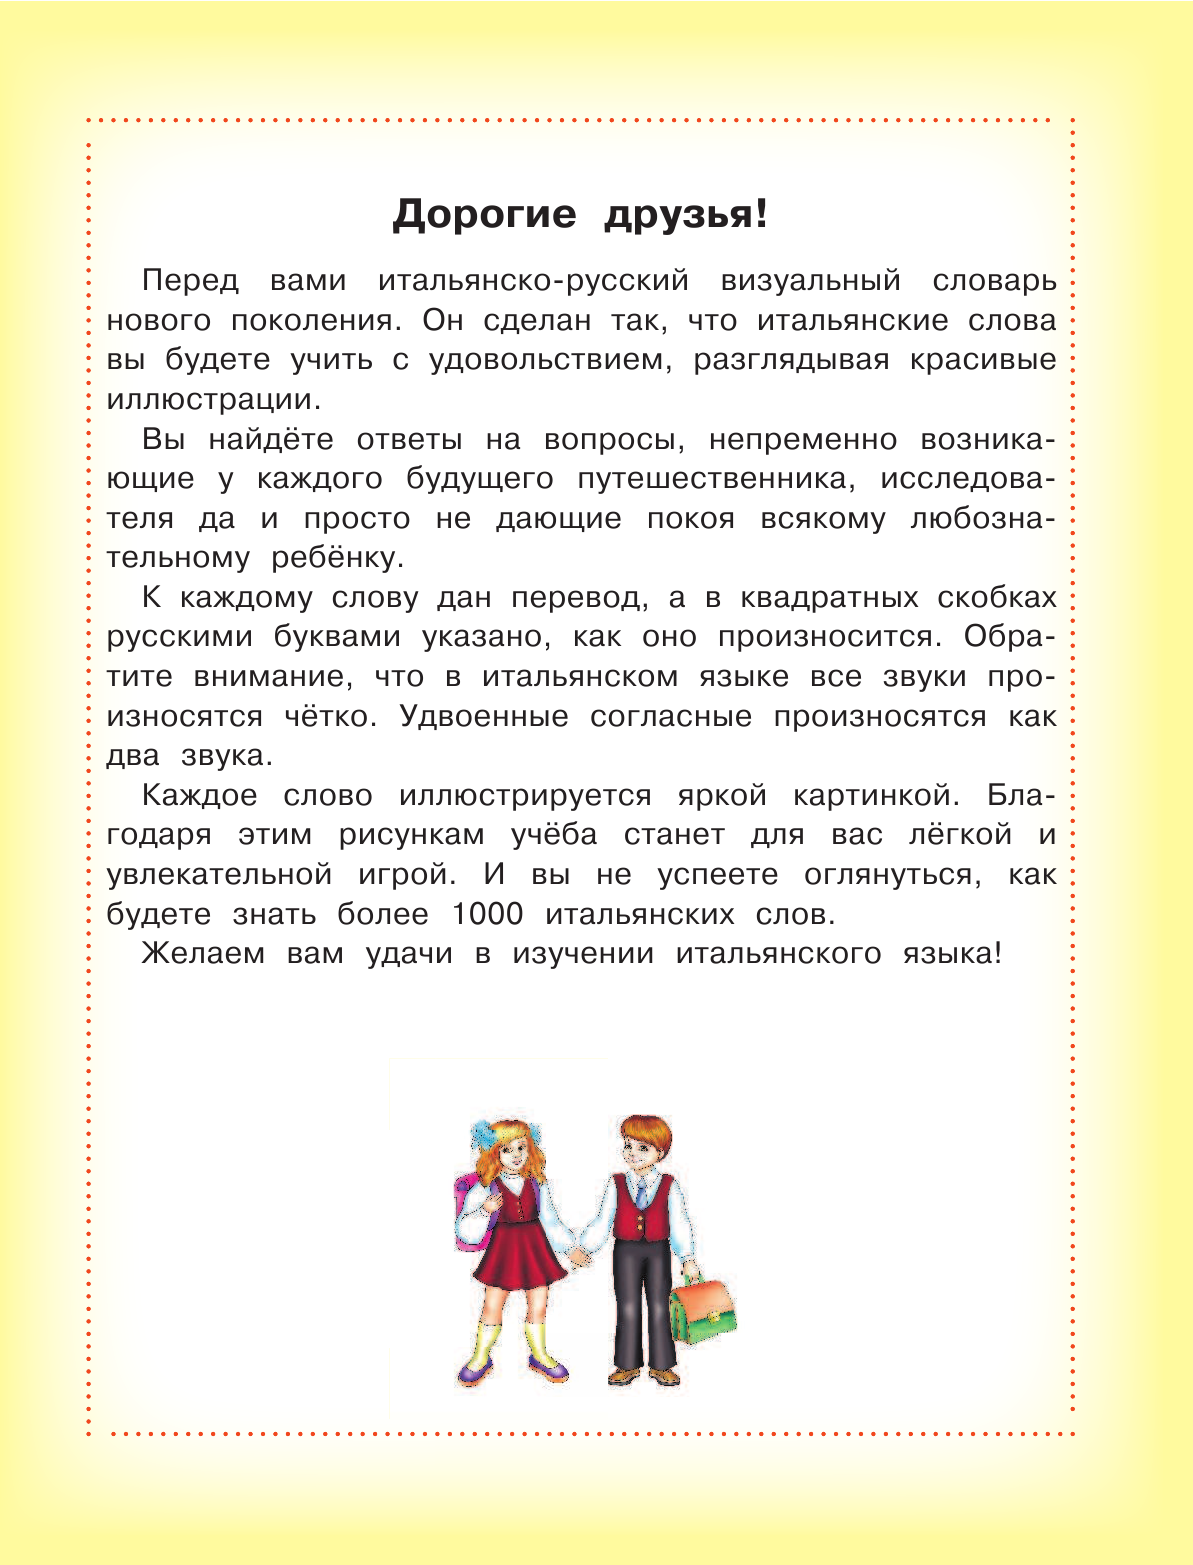  Итальянско-русский визуальный словарь для детей - страница 4